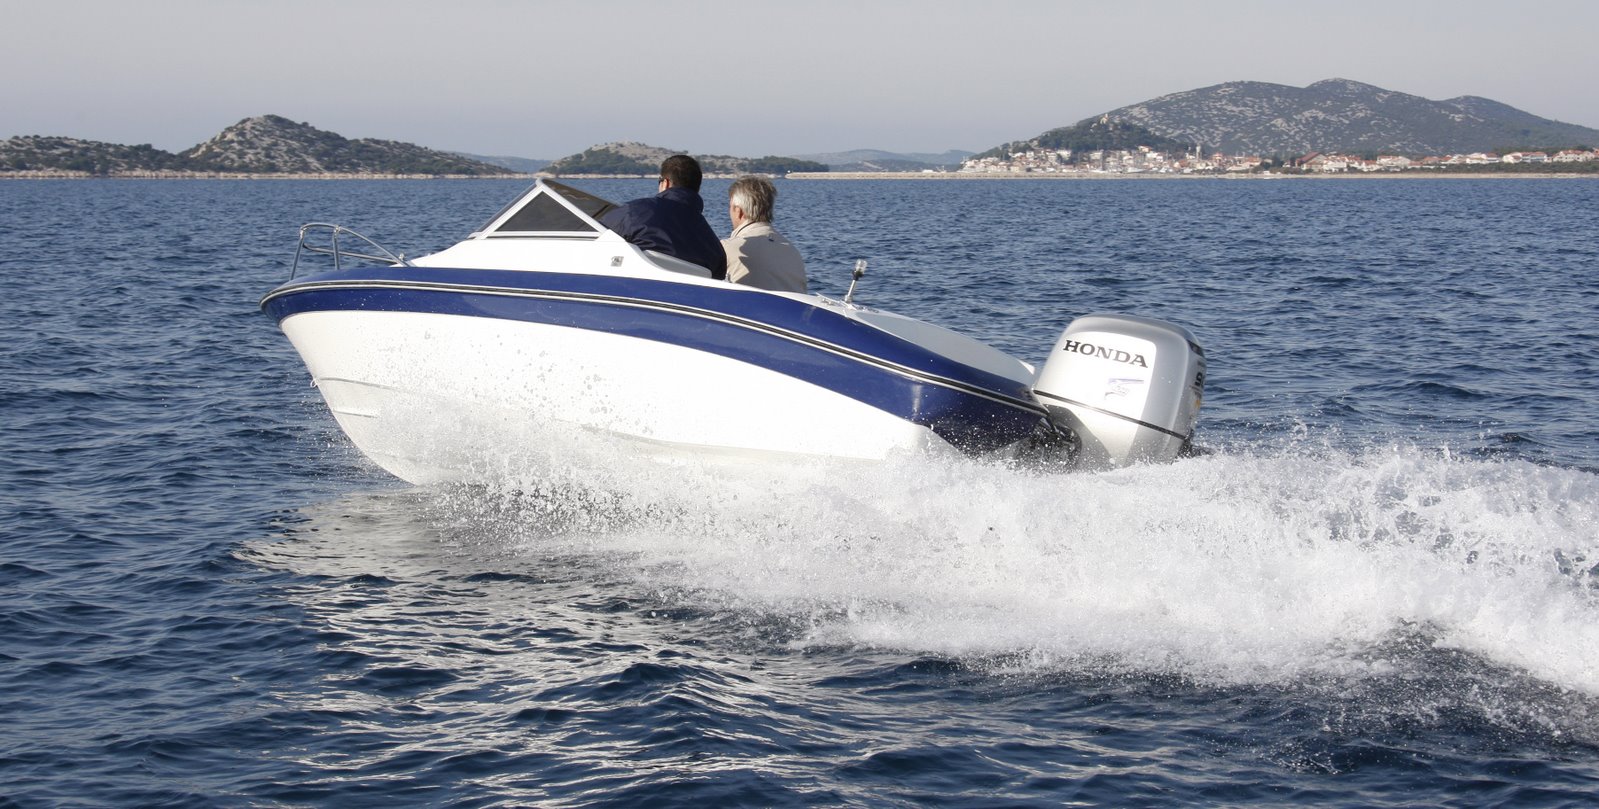 Grandsea 18ft/ 5.5m Fiberglass High Speed Motor Boat for Sale